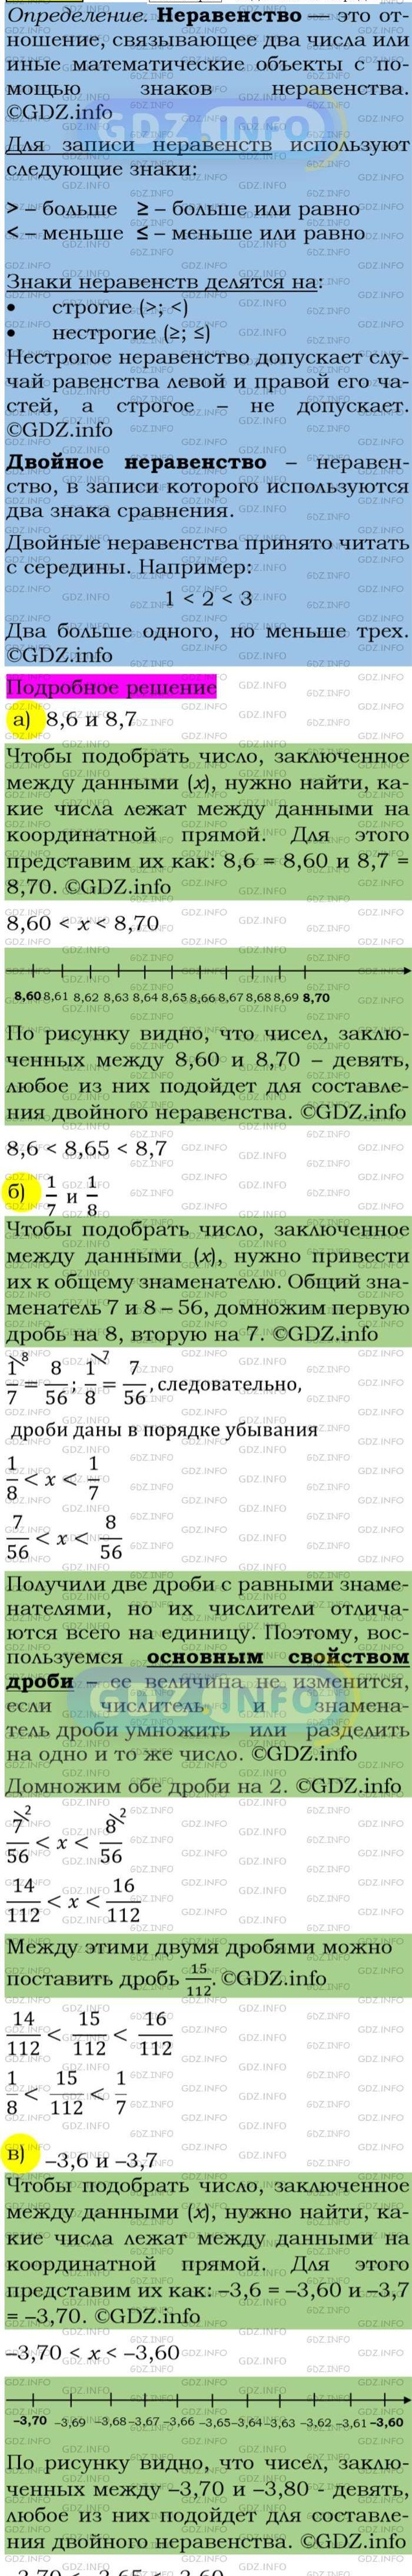 Фото подробного решения: Номер задания №76 из ГДЗ по Алгебре 7 класс: Макарычев Ю.Н.